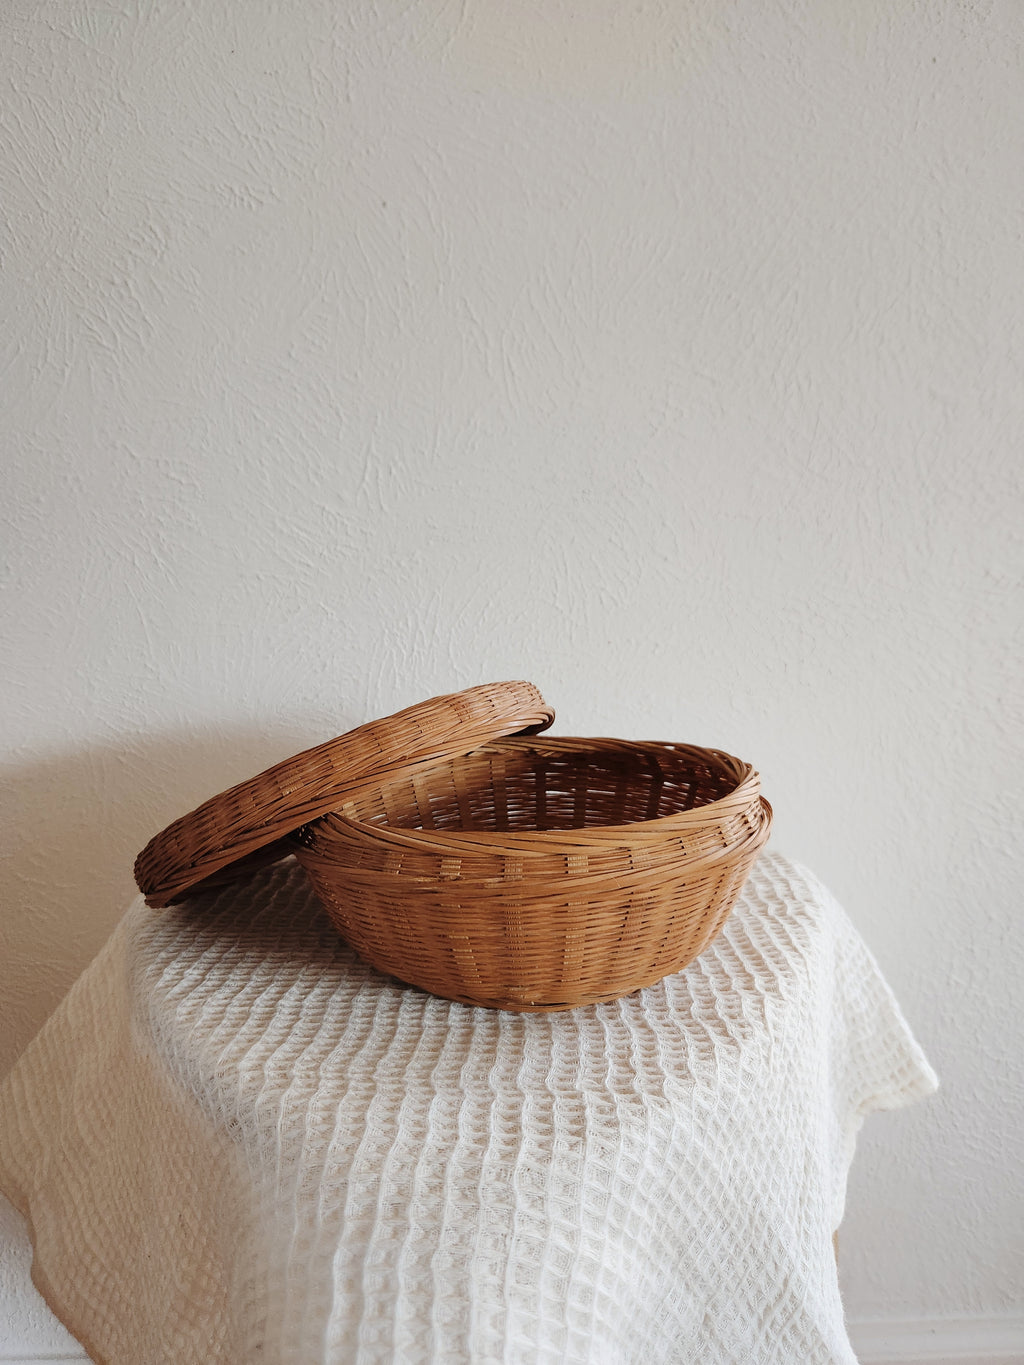 Vintage Basket with lid | Functional basket | Bathroom Decor | kitchen decor | boho home